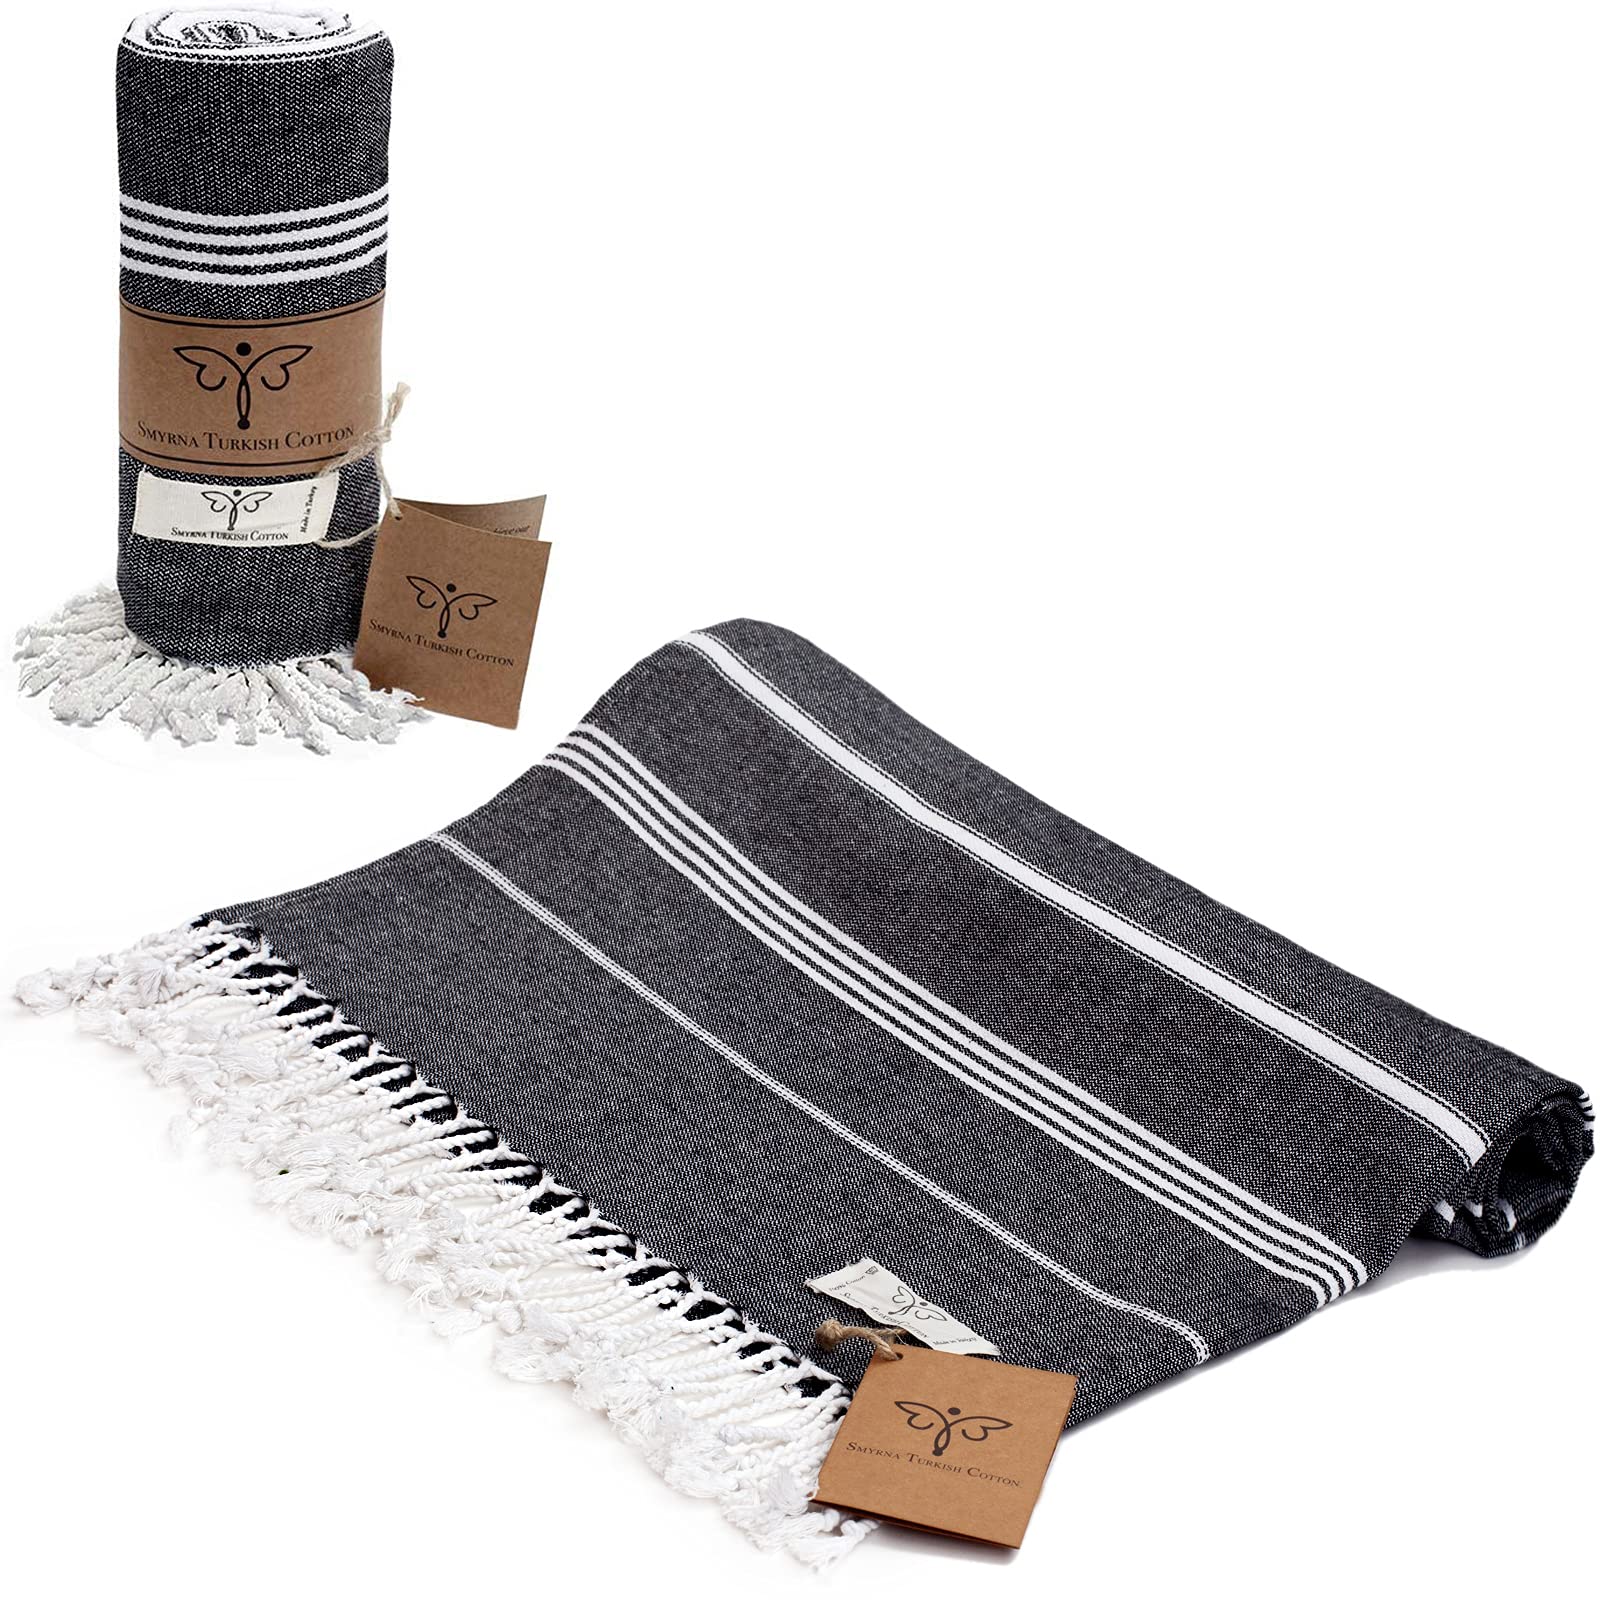 Turkish Beach Towel  100% Cotton, Prewashed, 38 x 70 Inches